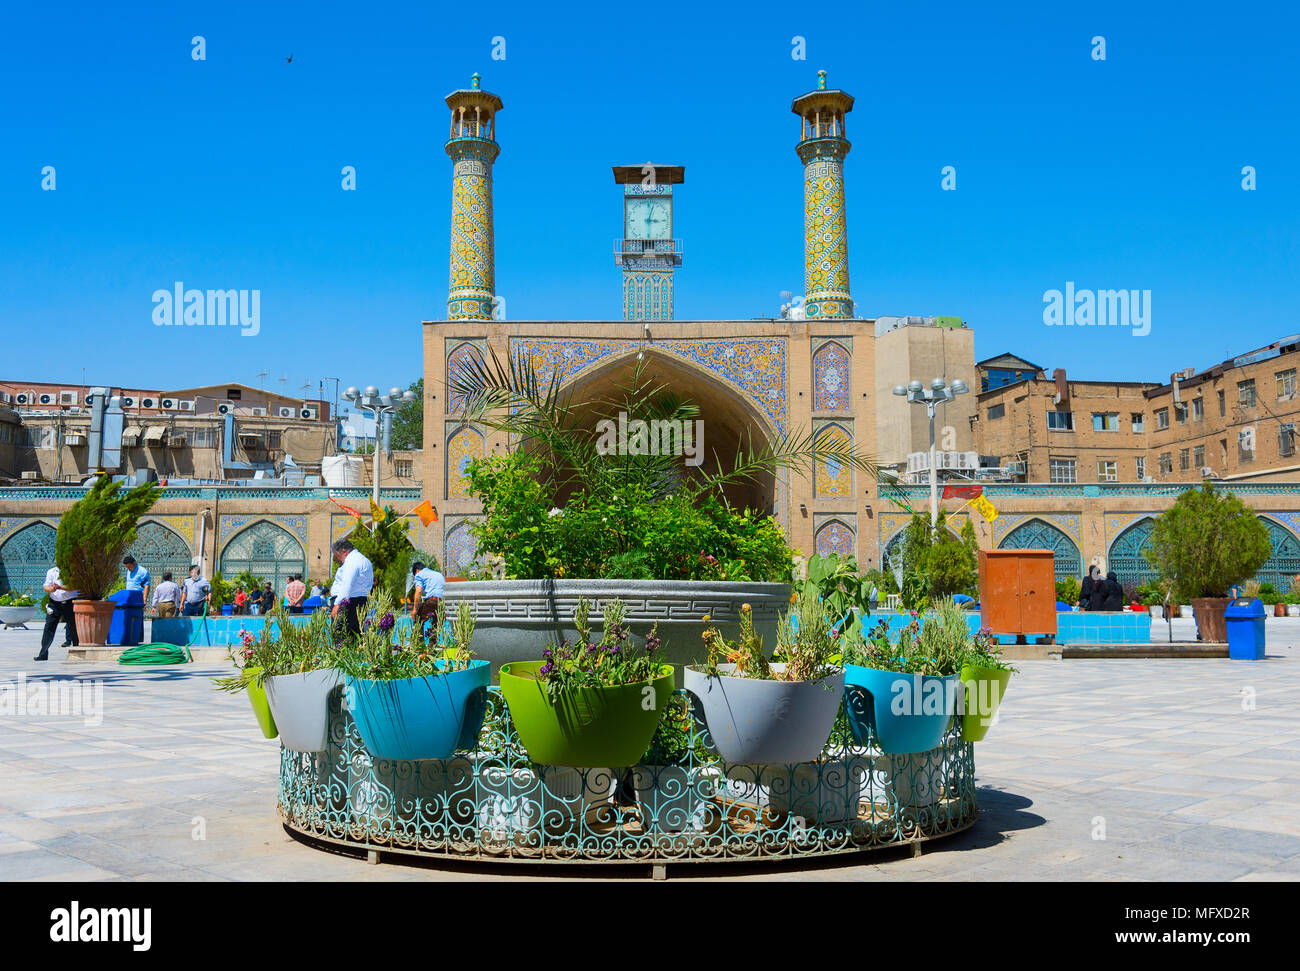 TEHRAN, IRAN - 22 Maggio 2017: la Moschea Shah, noto anche come l'Imam Khomeini moschea è una moschea del Grand Bazaar a Tehran, Iran. Foto Stock